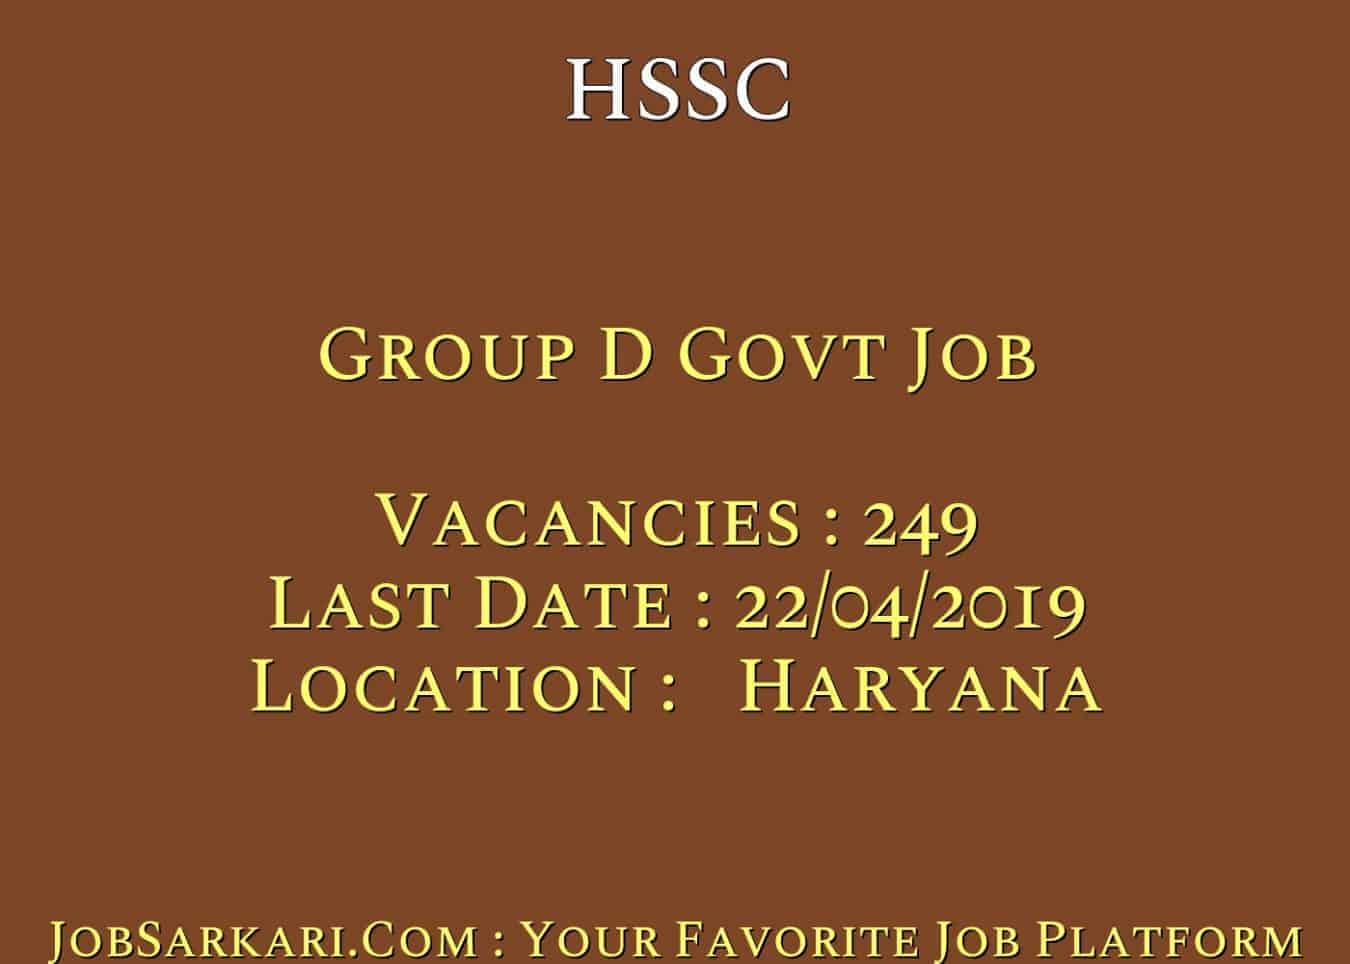 HSSC Recruitment 2019 For Group D Govt Job